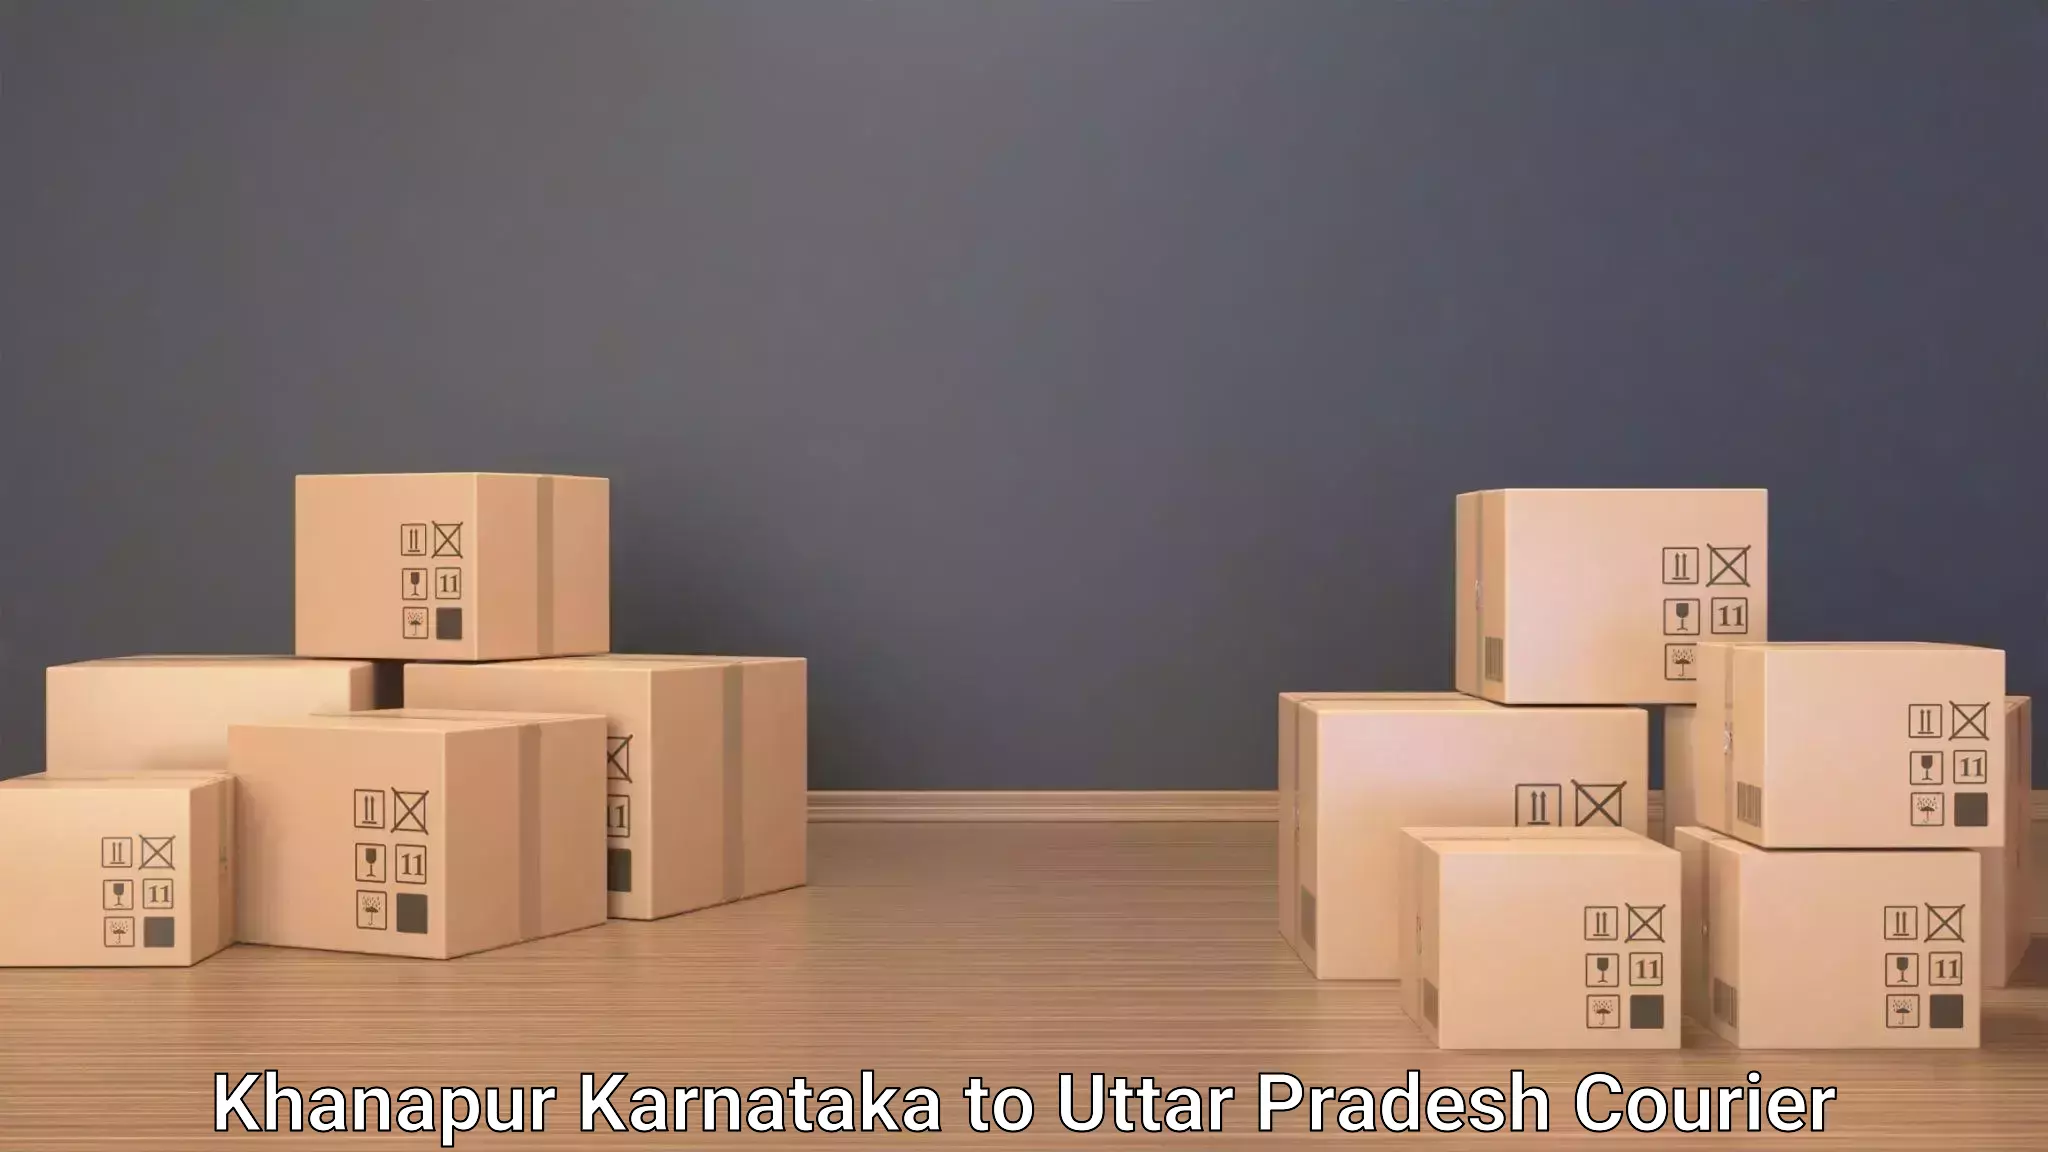 Baggage courier logistics Khanapur Karnataka to Uttar Pradesh